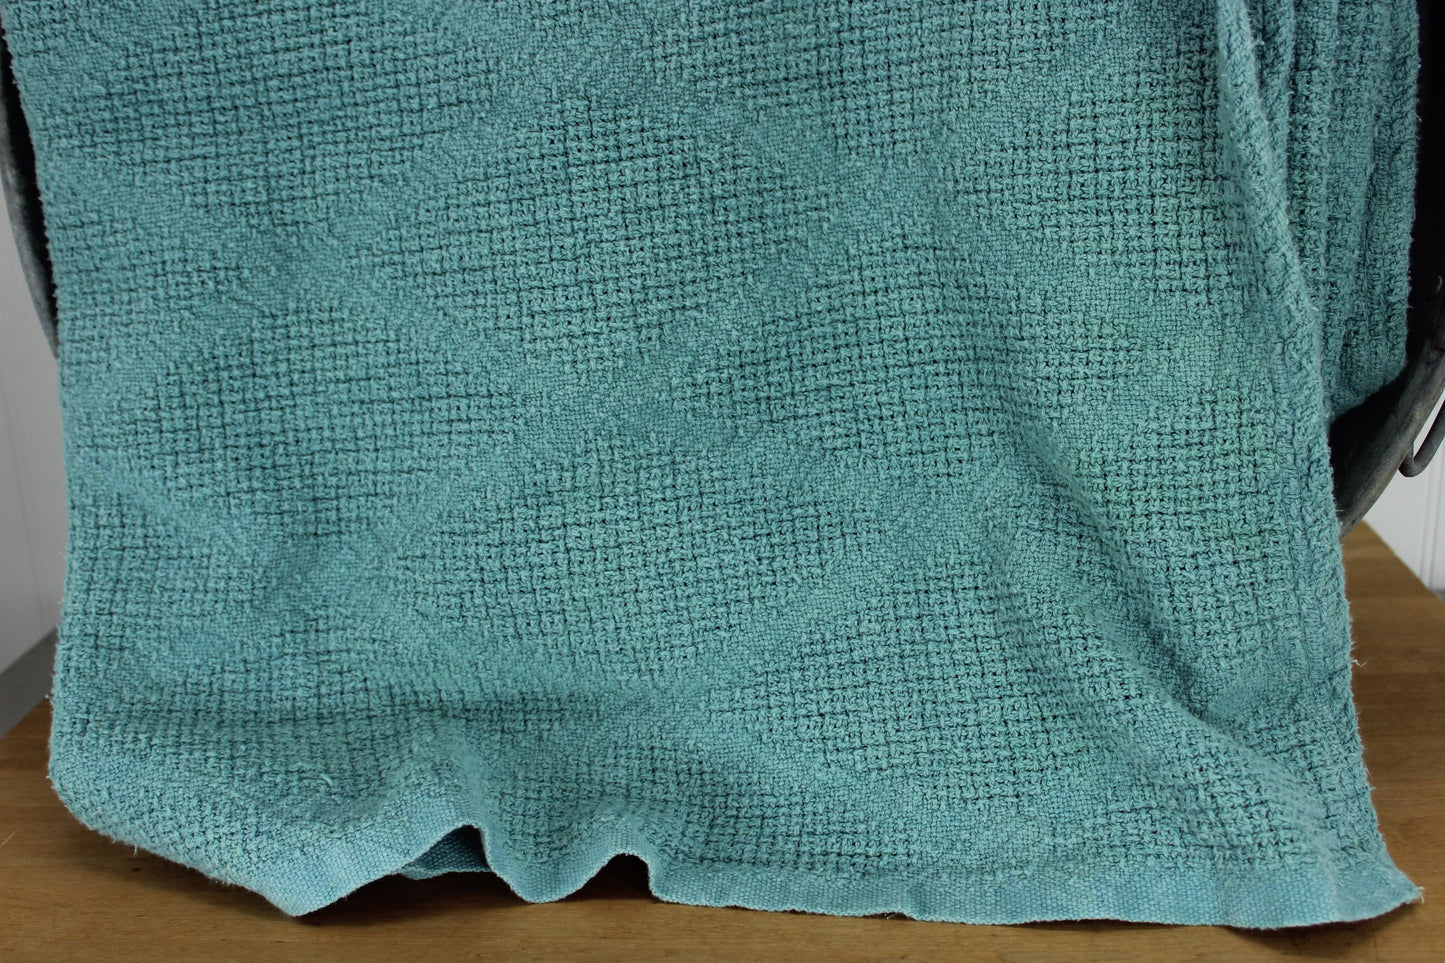 Unbranded Cotton Blanket - Sky Blue Woven Diamond Pattern ~ 70" X 94" X Long heavy